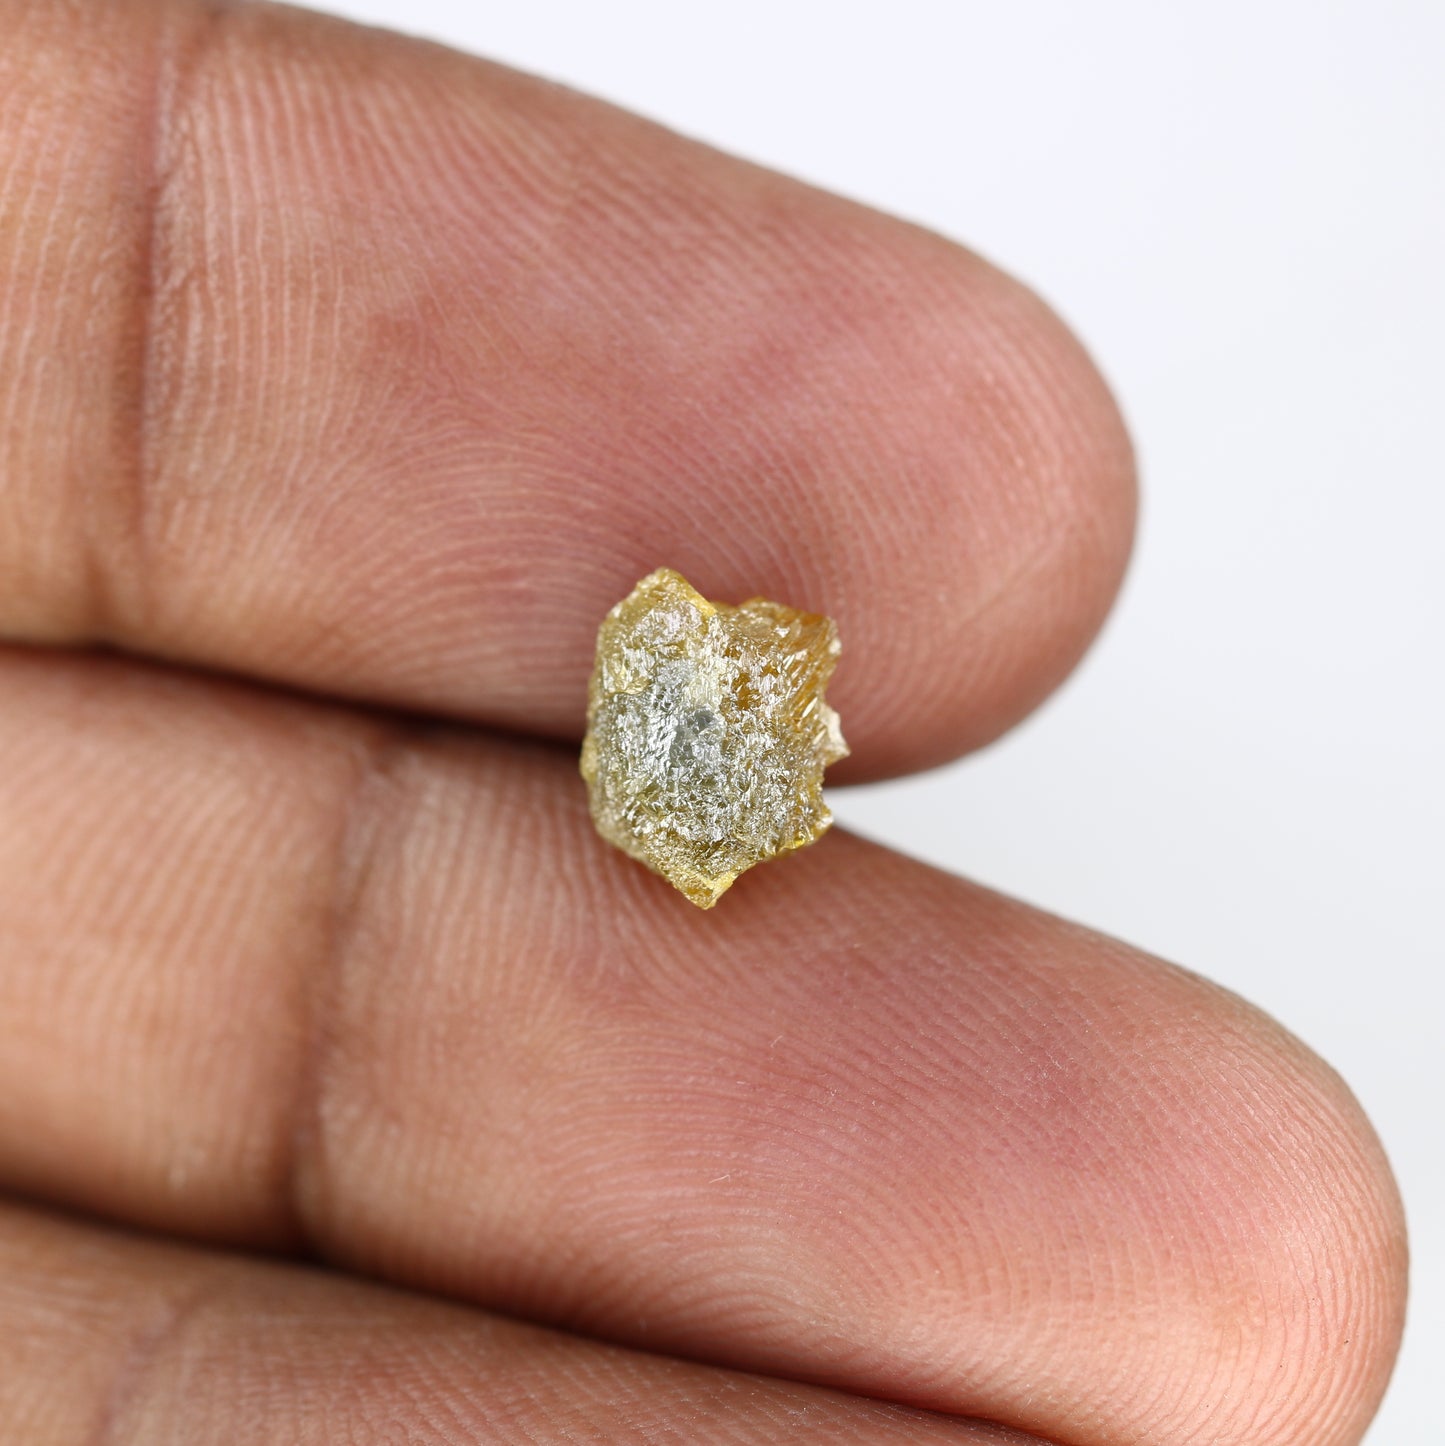 1.95 CT Raw Greenish Rough Uncut Irregular Shape Diamond For Wedding Ring